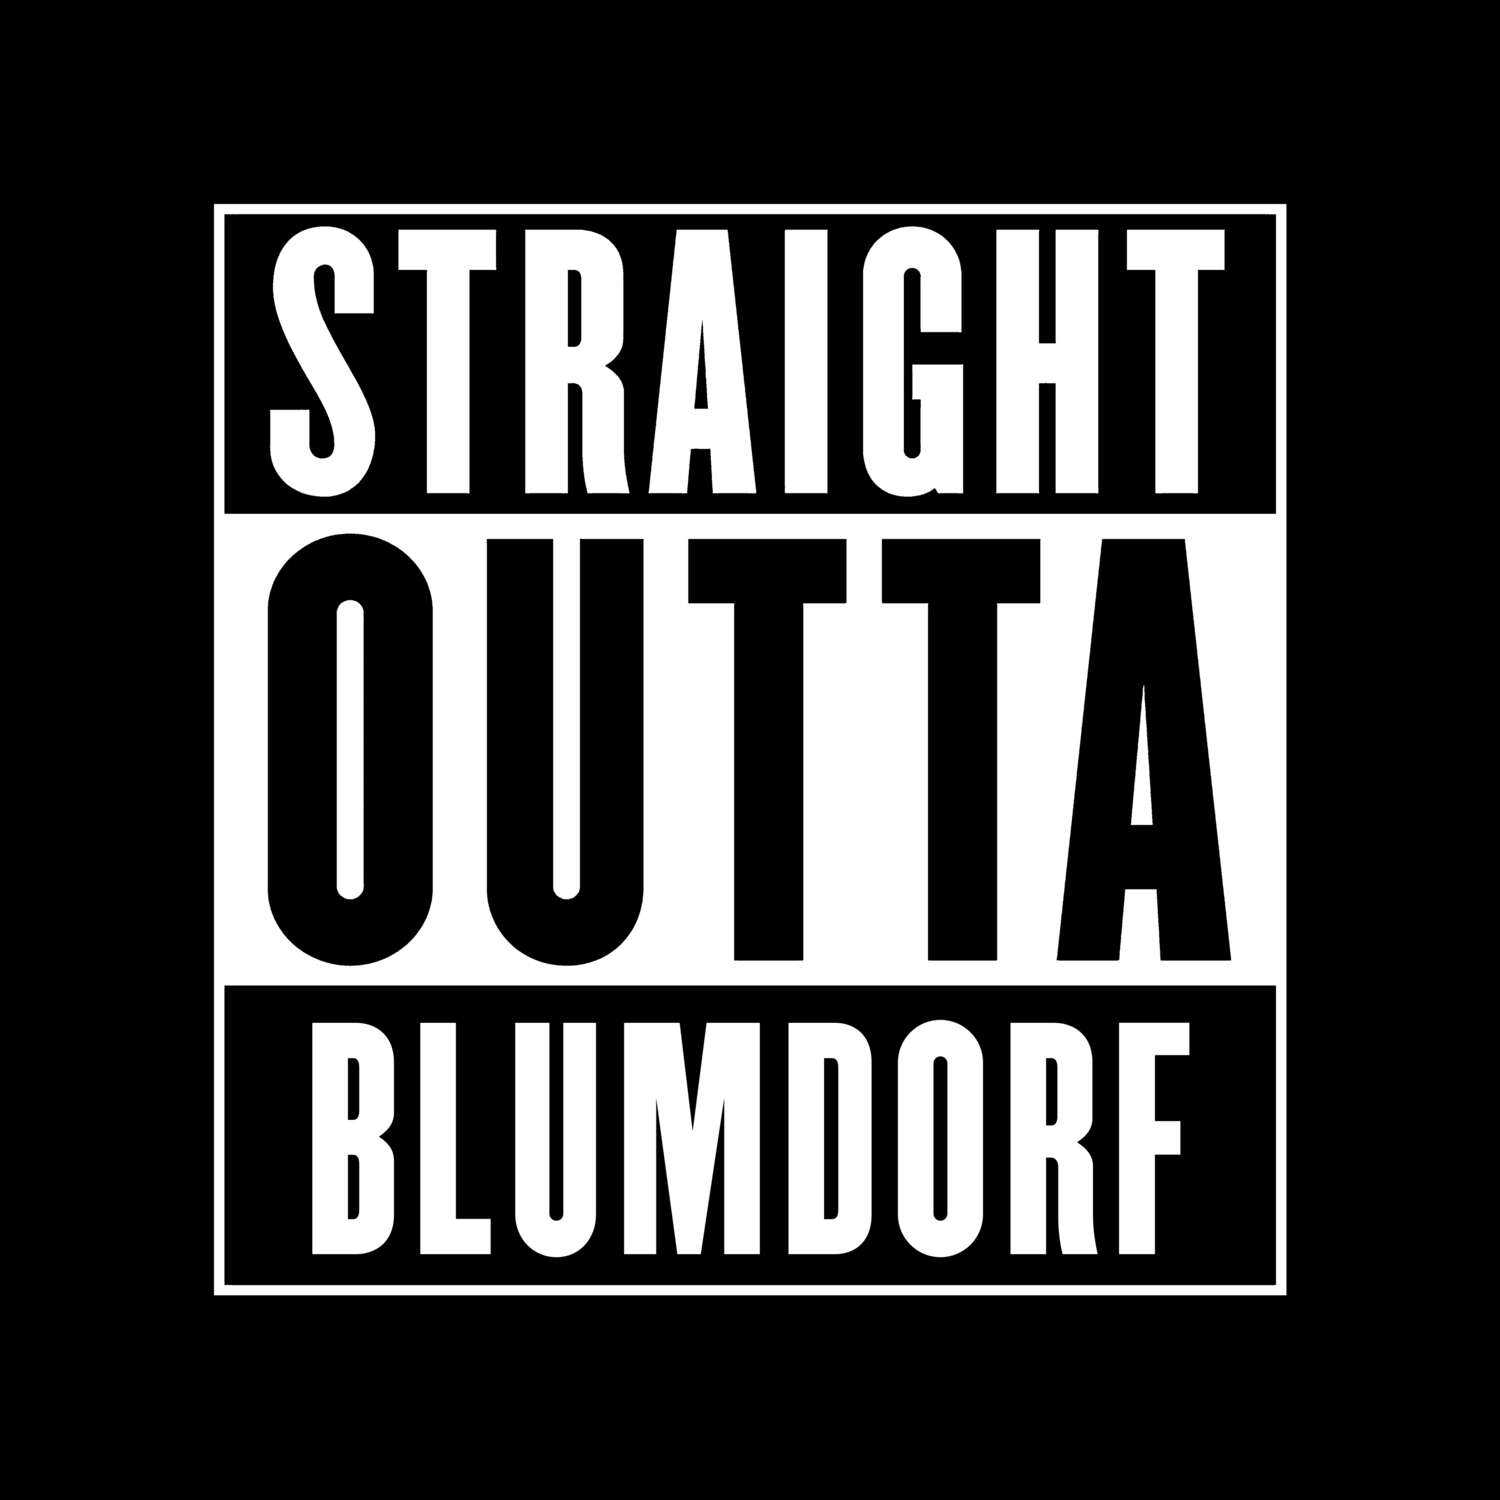 Blumdorf T-Shirt »Straight Outta«